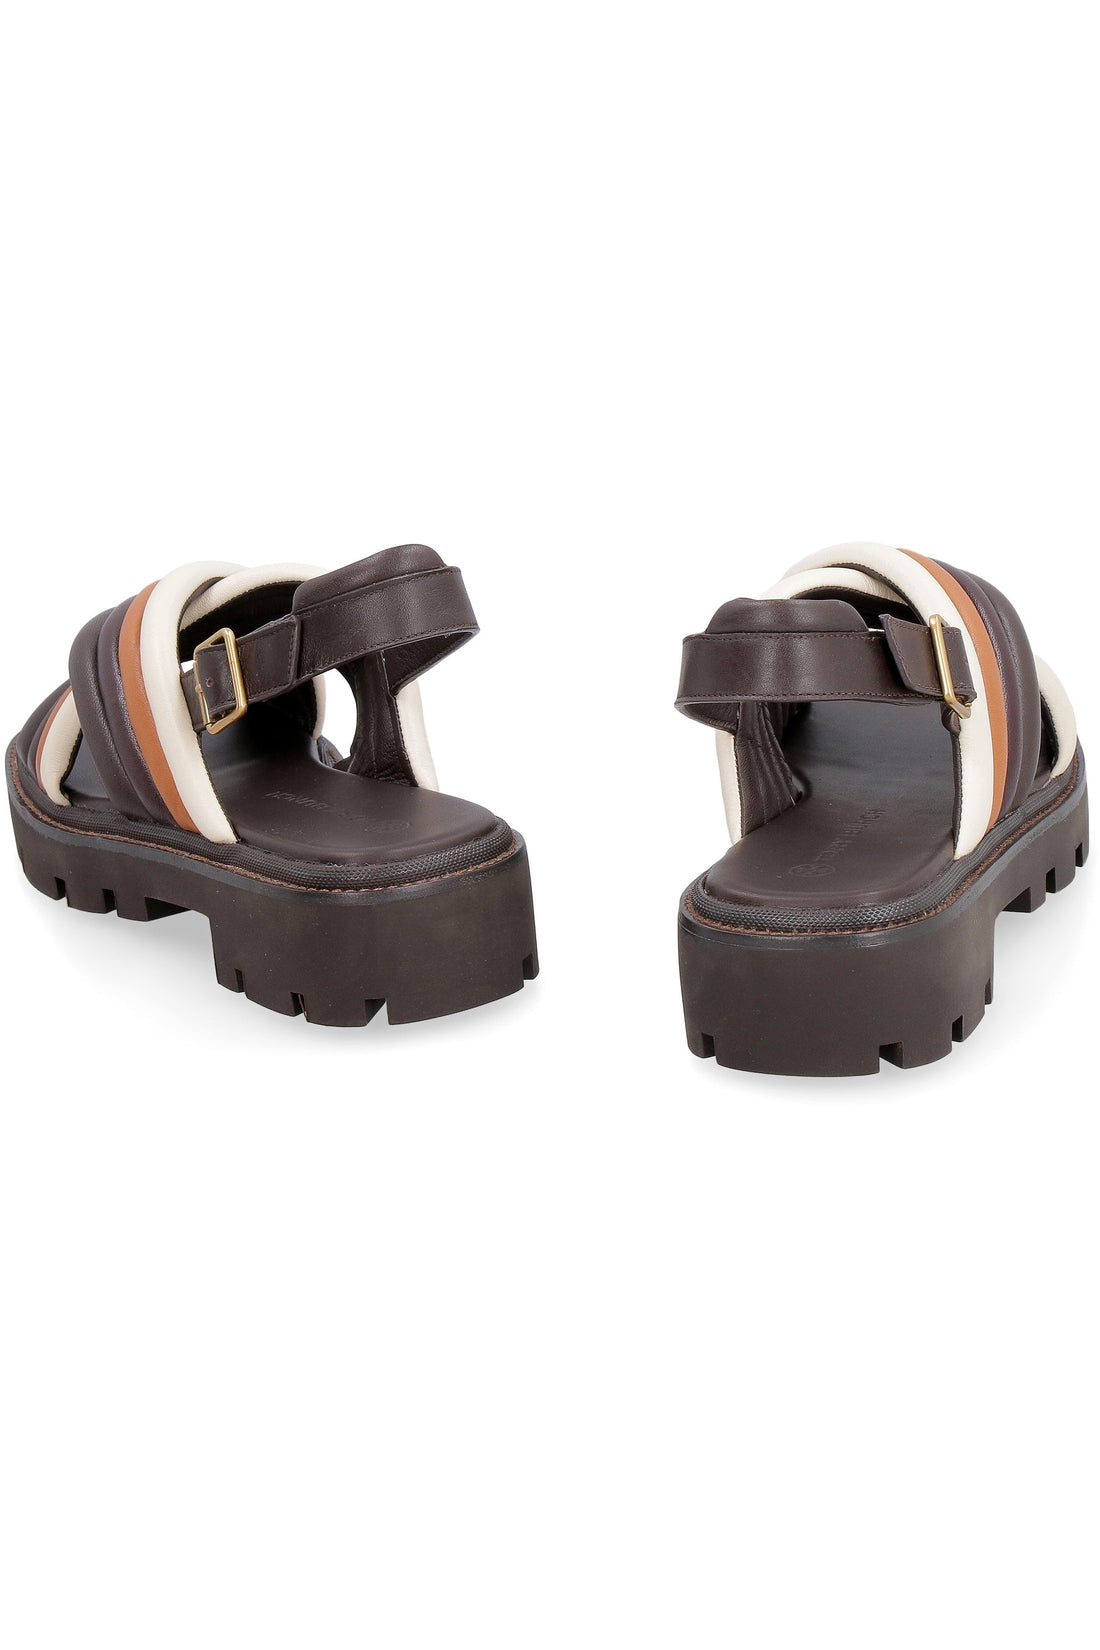 Tory Burch-OUTLET-SALE-Leather platform sandals-ARCHIVIST